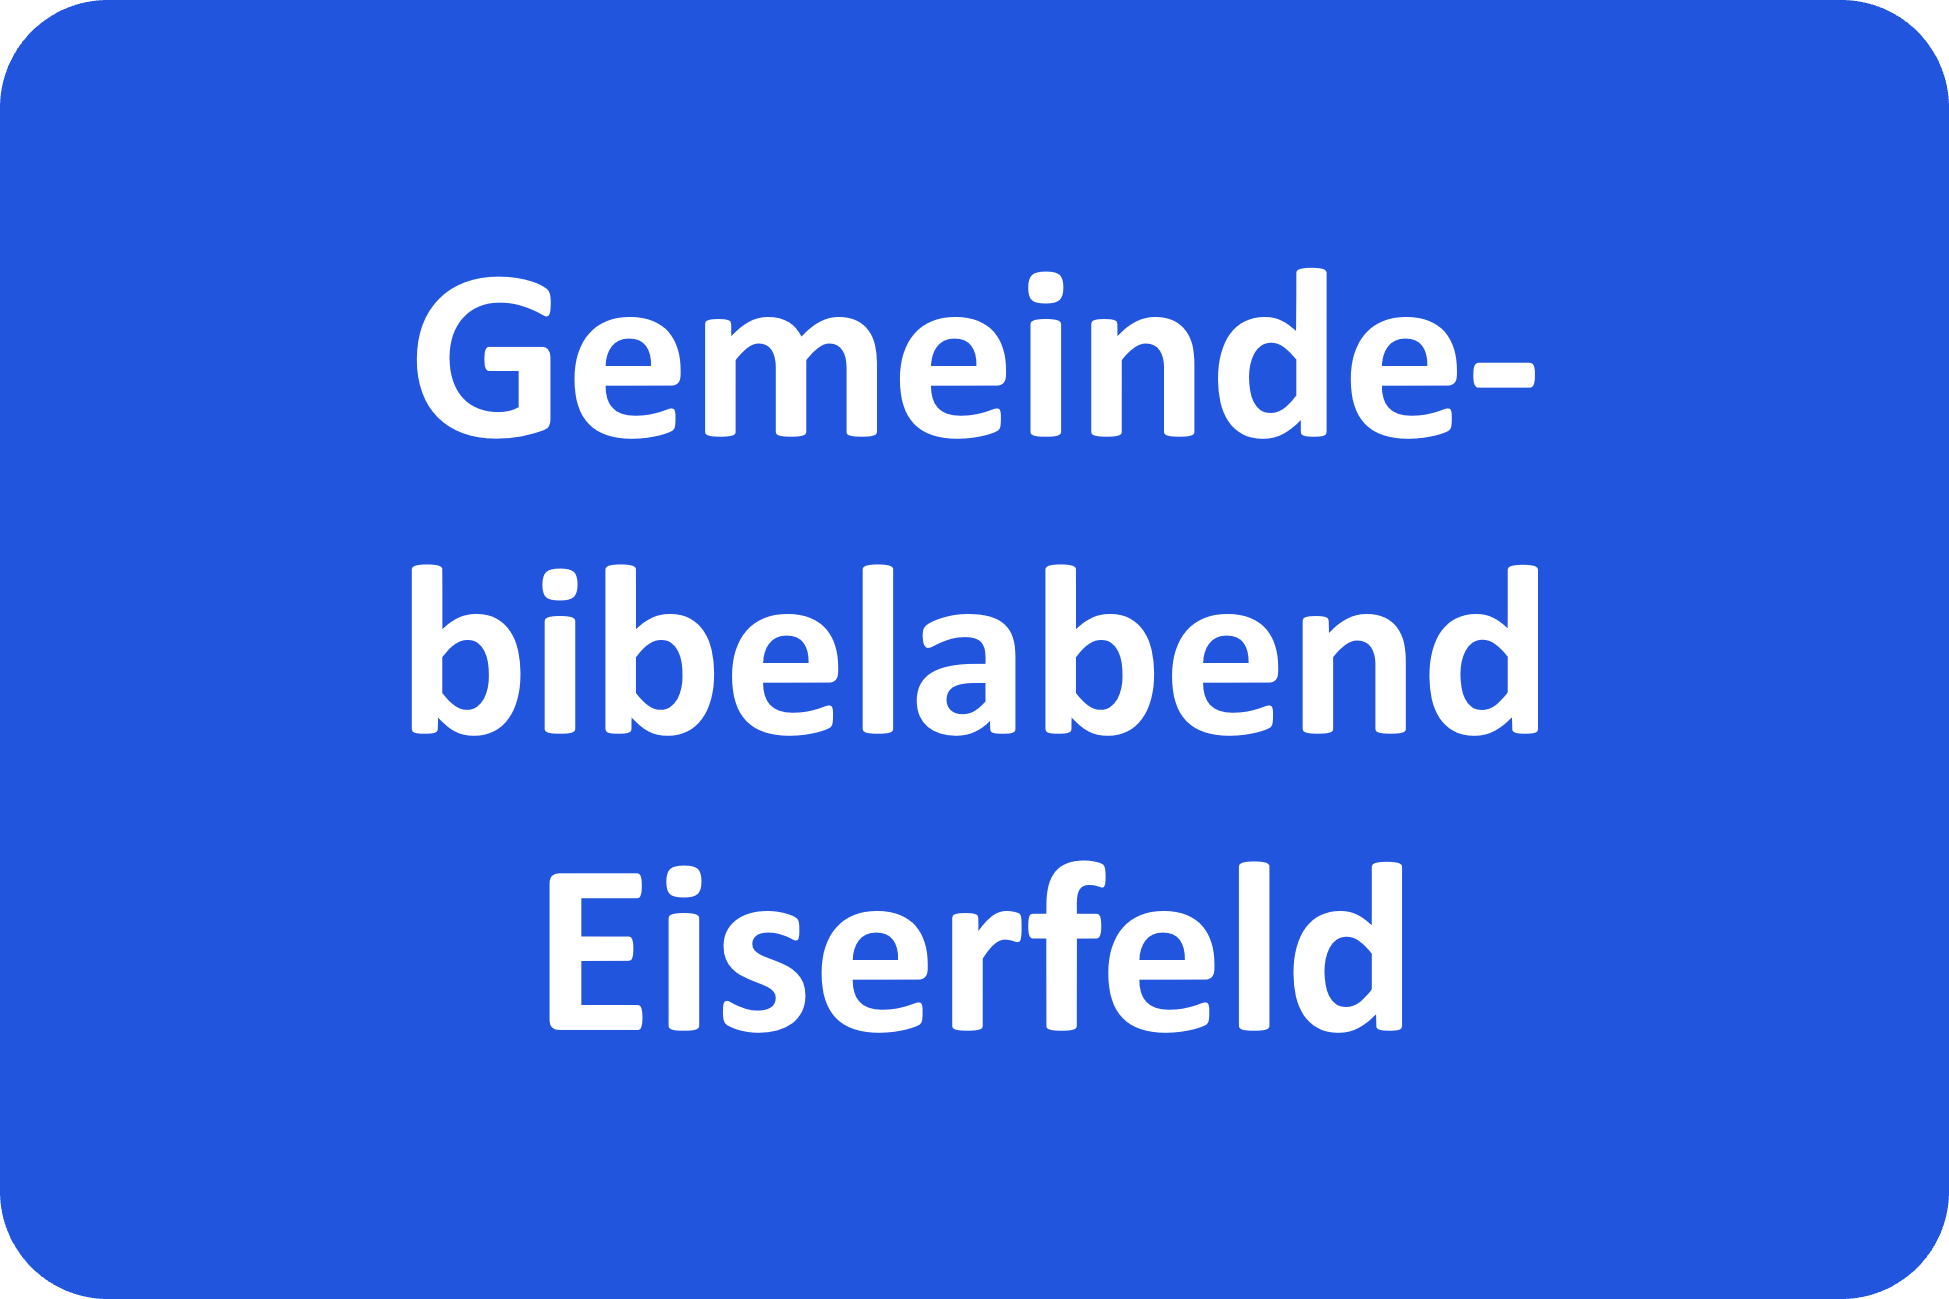 Gemeindebibelabend Eiserfeld